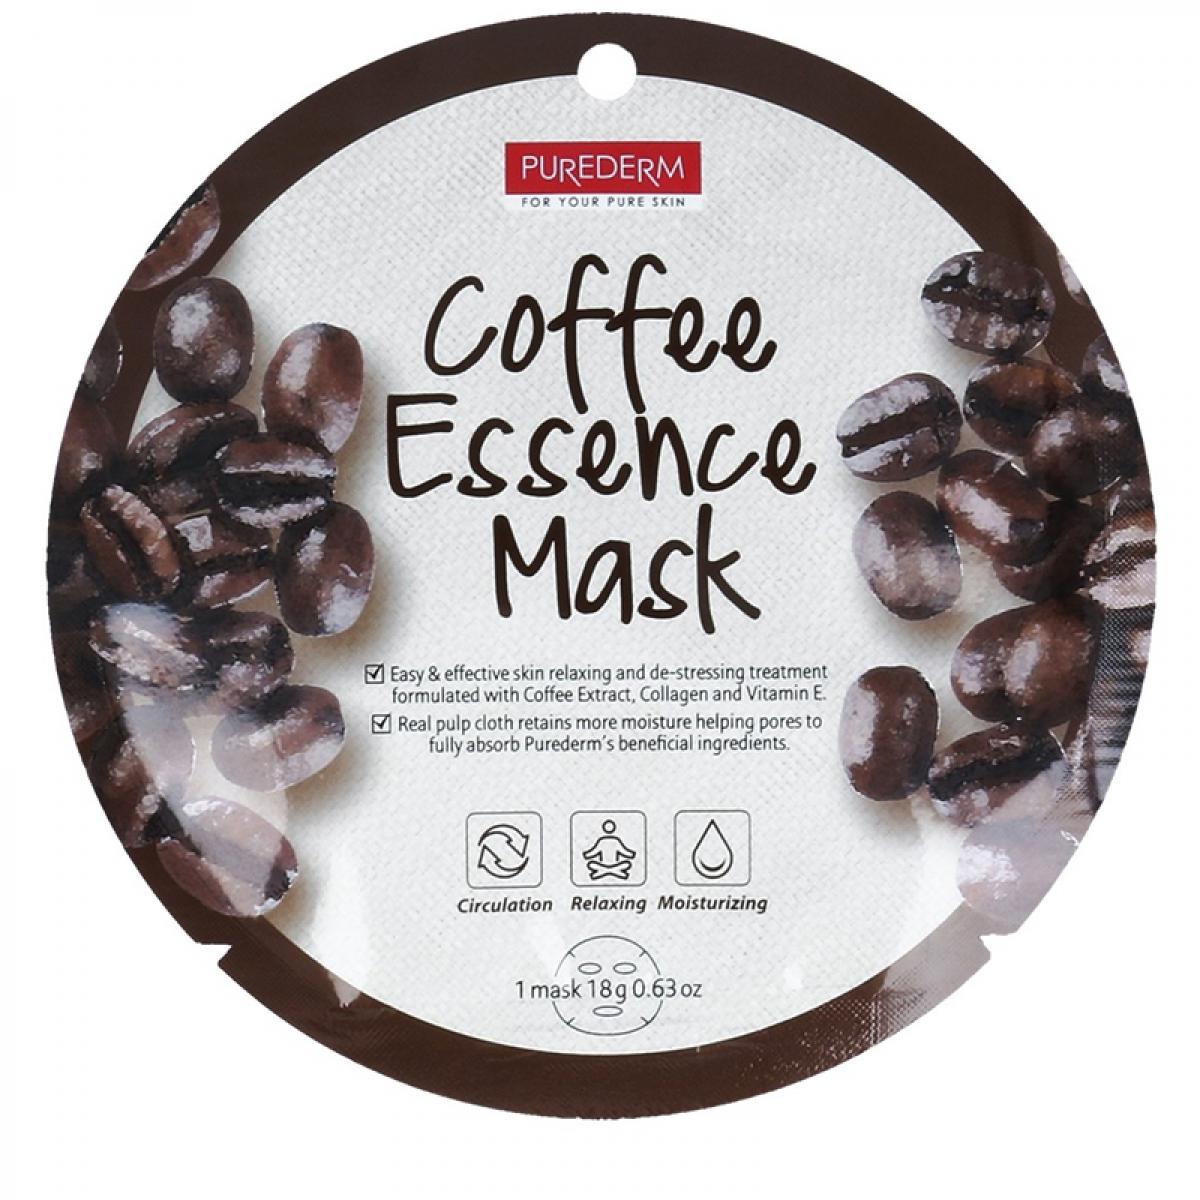 ماسک نقابی کلاژنه حاوی عصاره قهوه وزن 18 گرم - Purederm Coffee Essence Mask 18gr